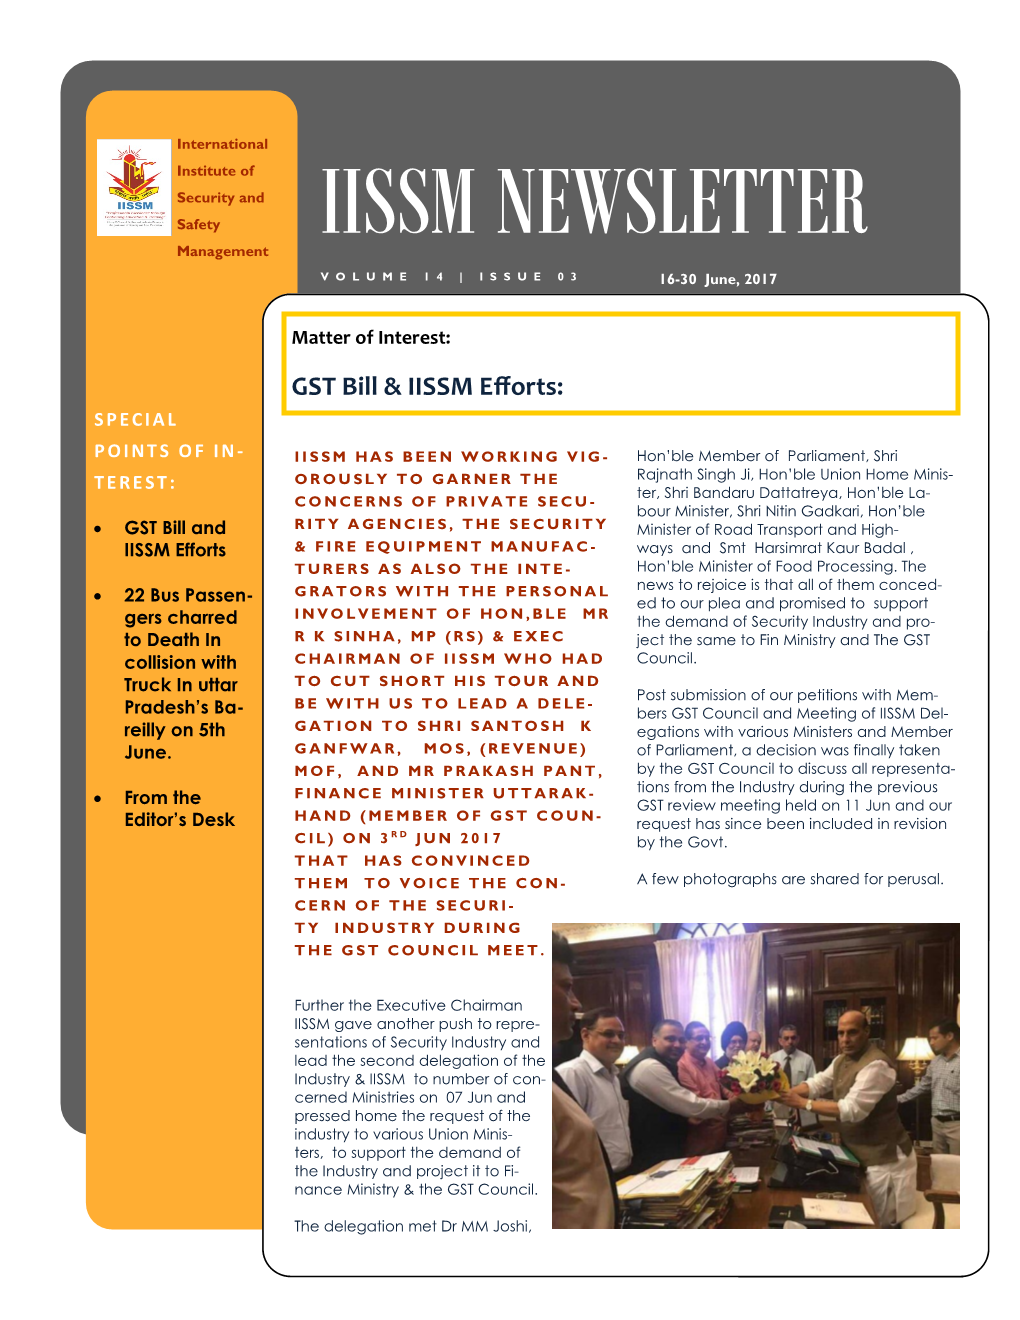 IISSM Newletter June 16-30.Pub